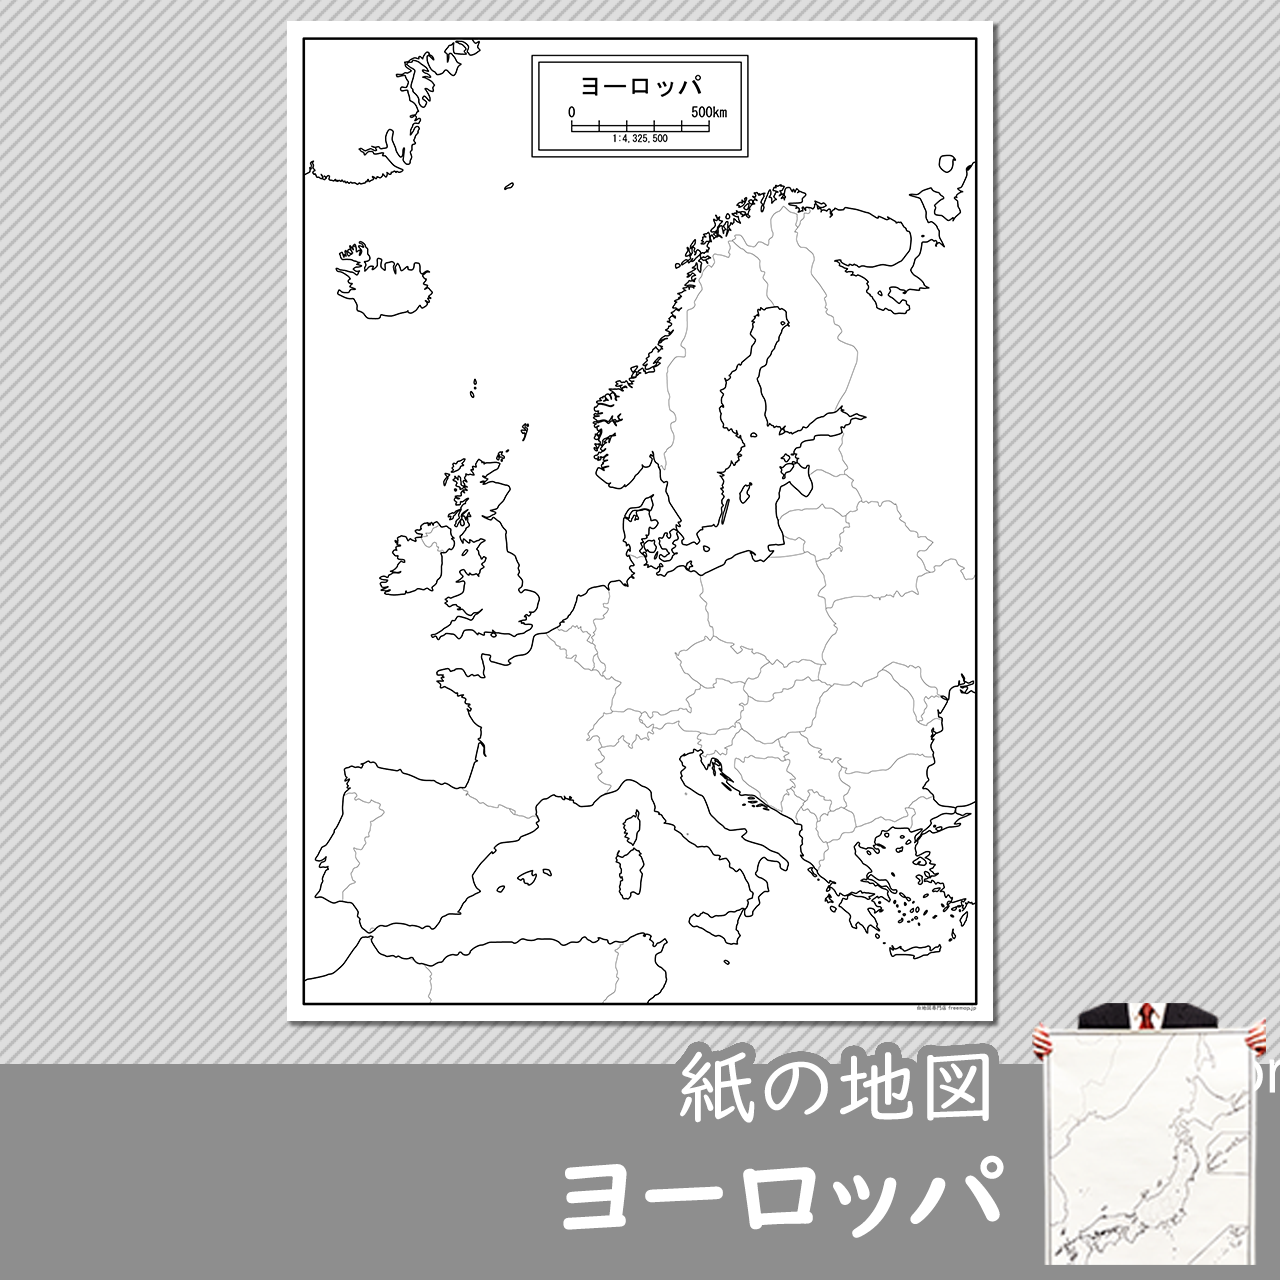 ヨーロッパの紙の白地図のサムネイル